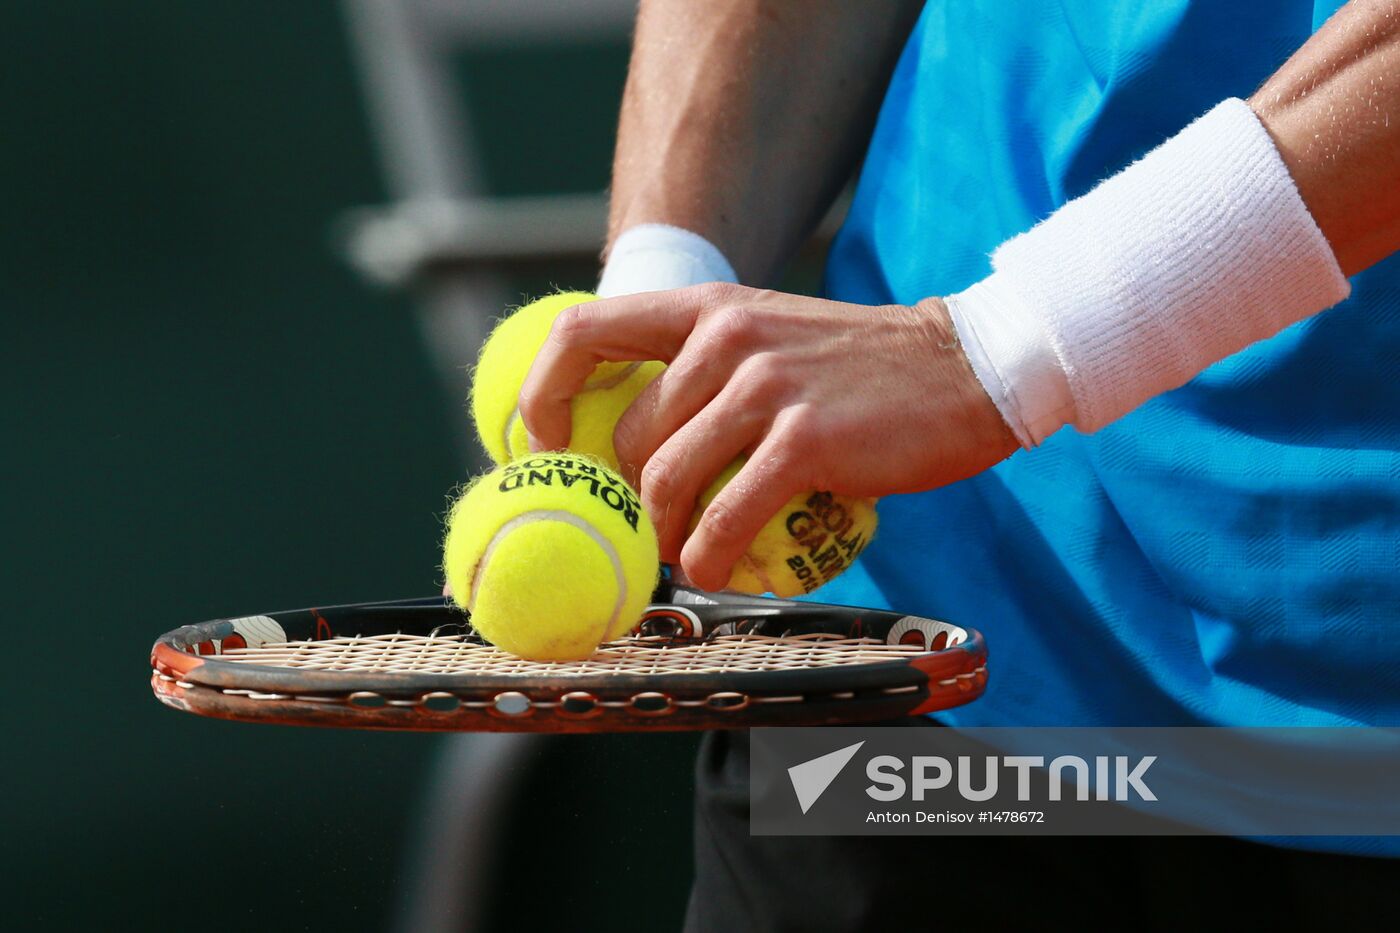 Tennis. 2013 Roland Garros. Day Three